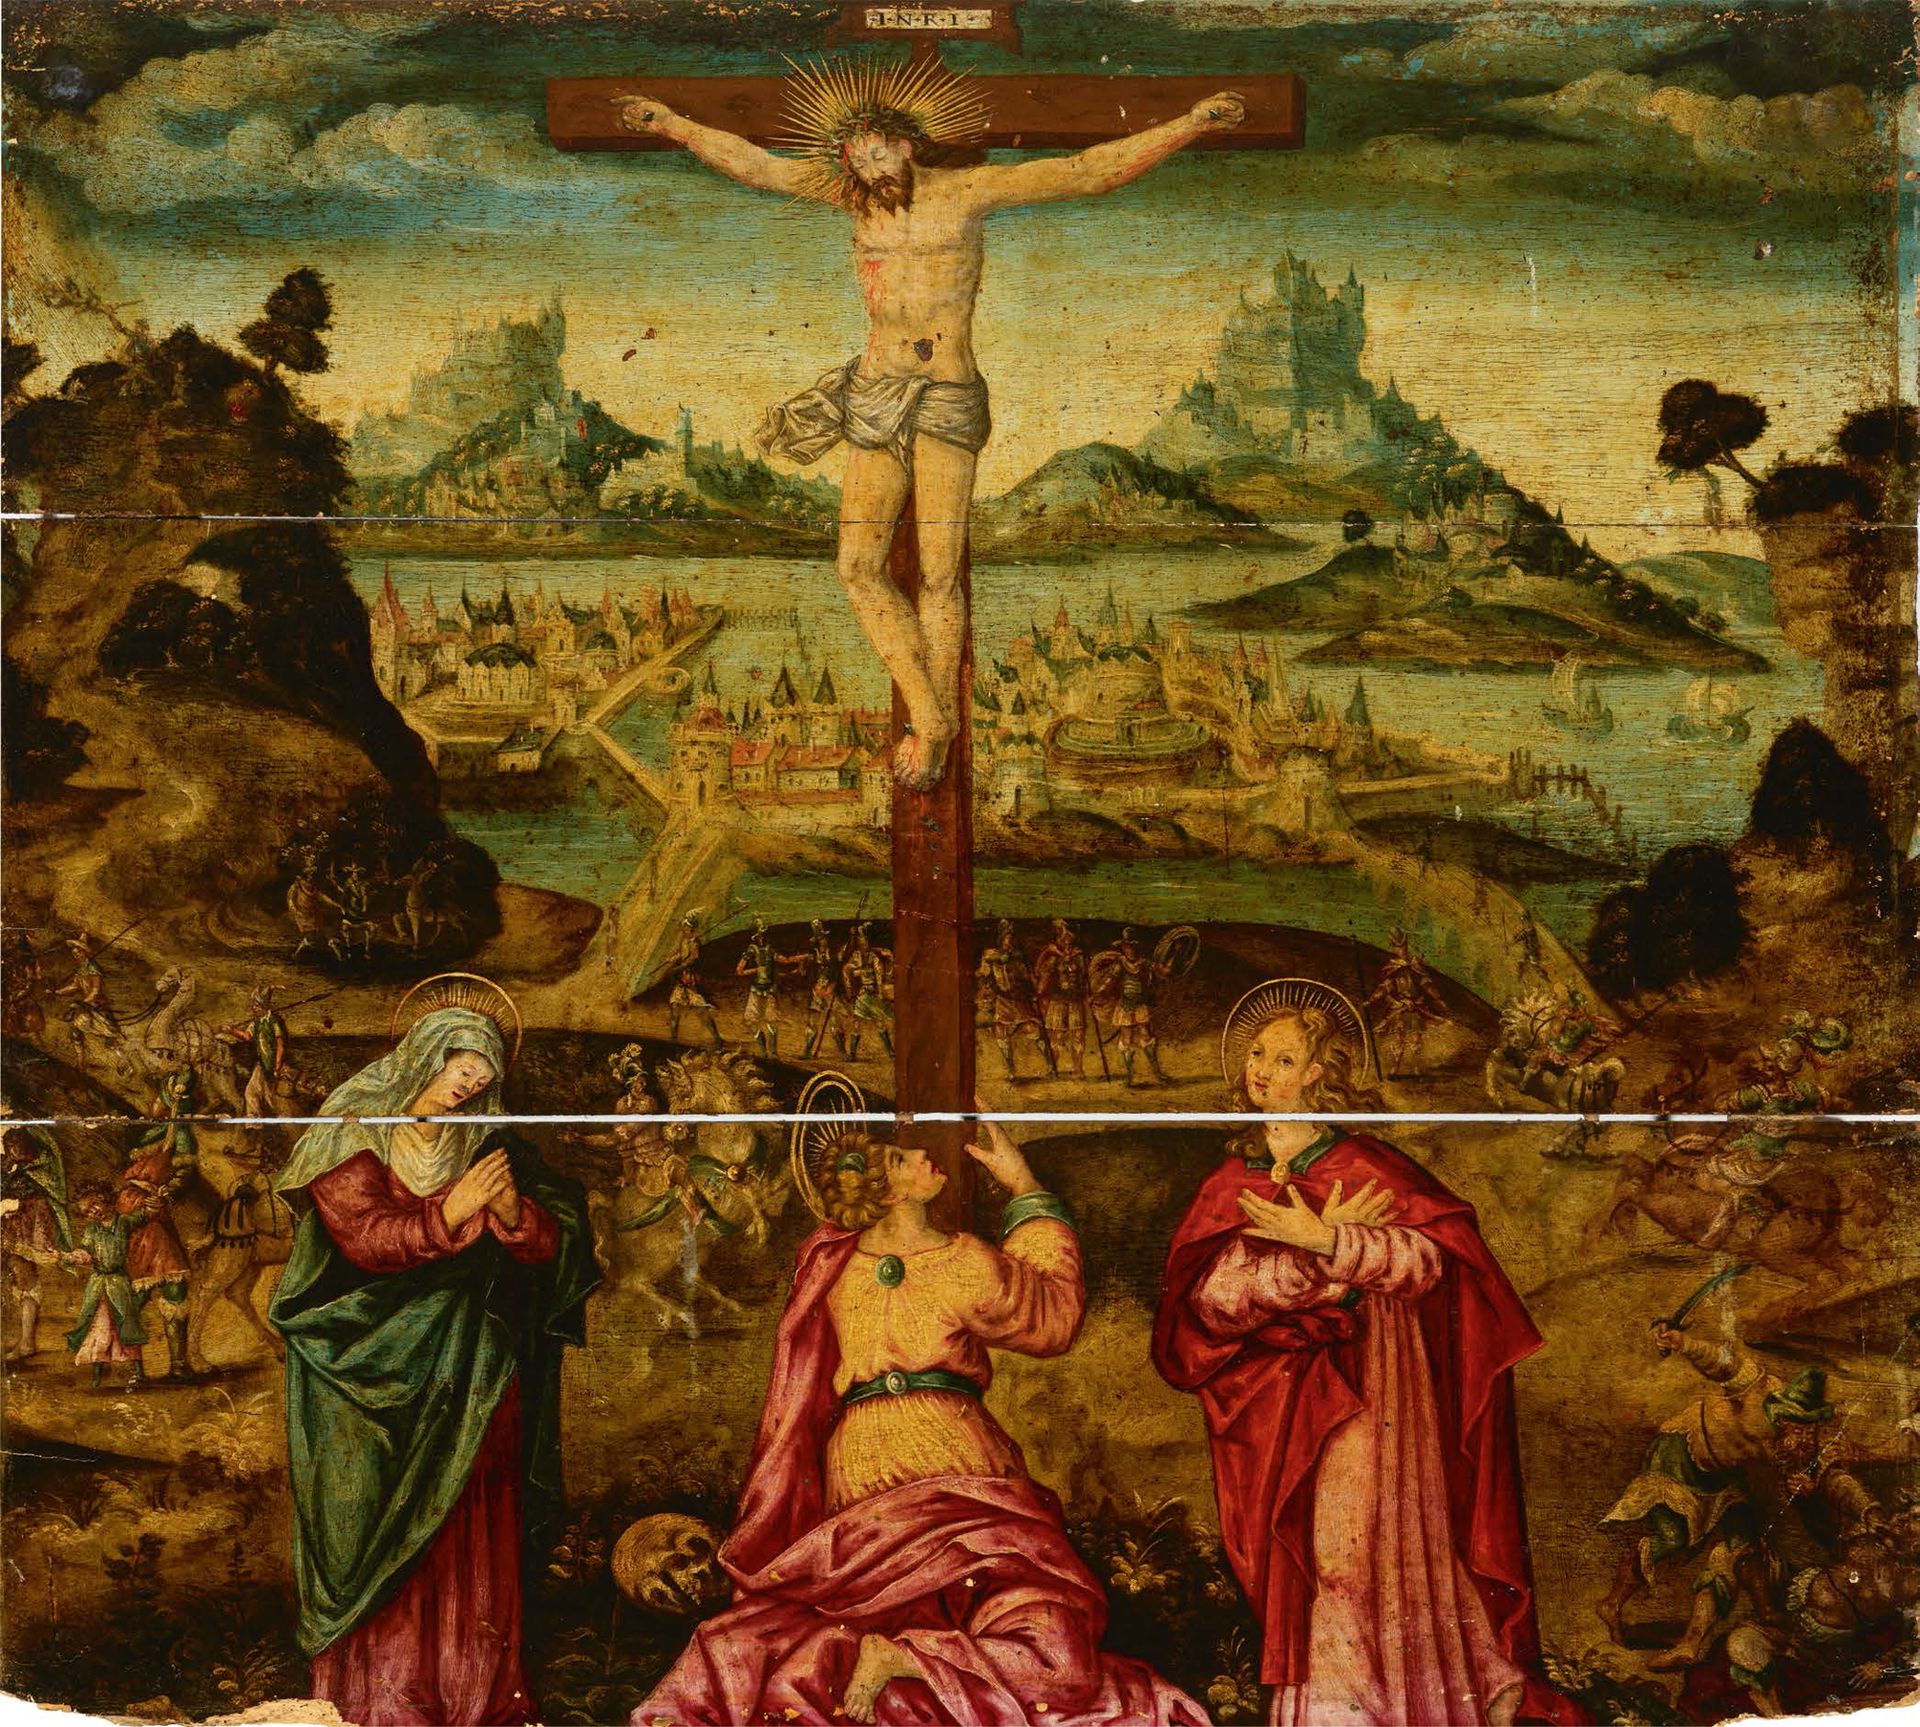 BRUGES, VERS 1580 
Kreuzigung 

Öl auf einer Tafel

74 x 83,5 cm